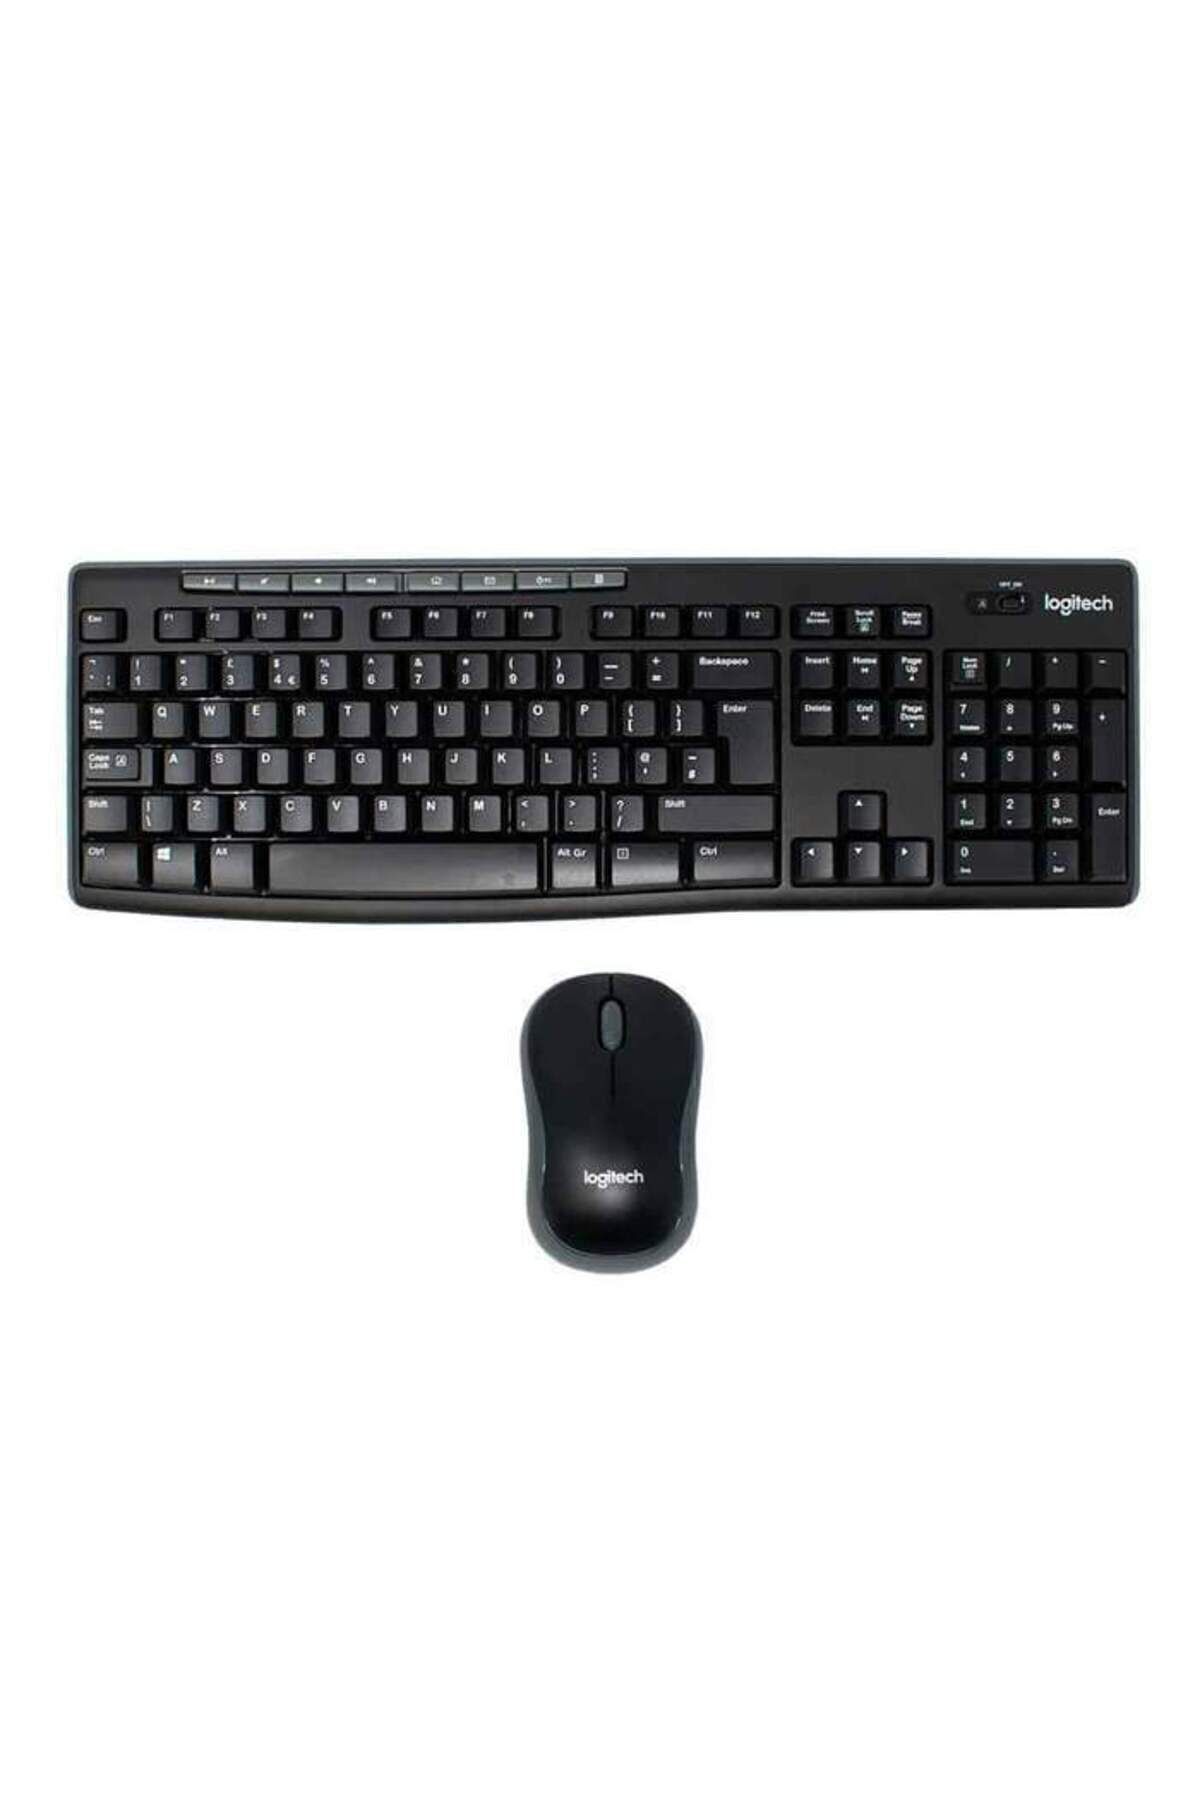 logitech Mk270 920-004525 Nano Usb Q Tr Optik Siyah Kablosuz Klavye Mouse Set